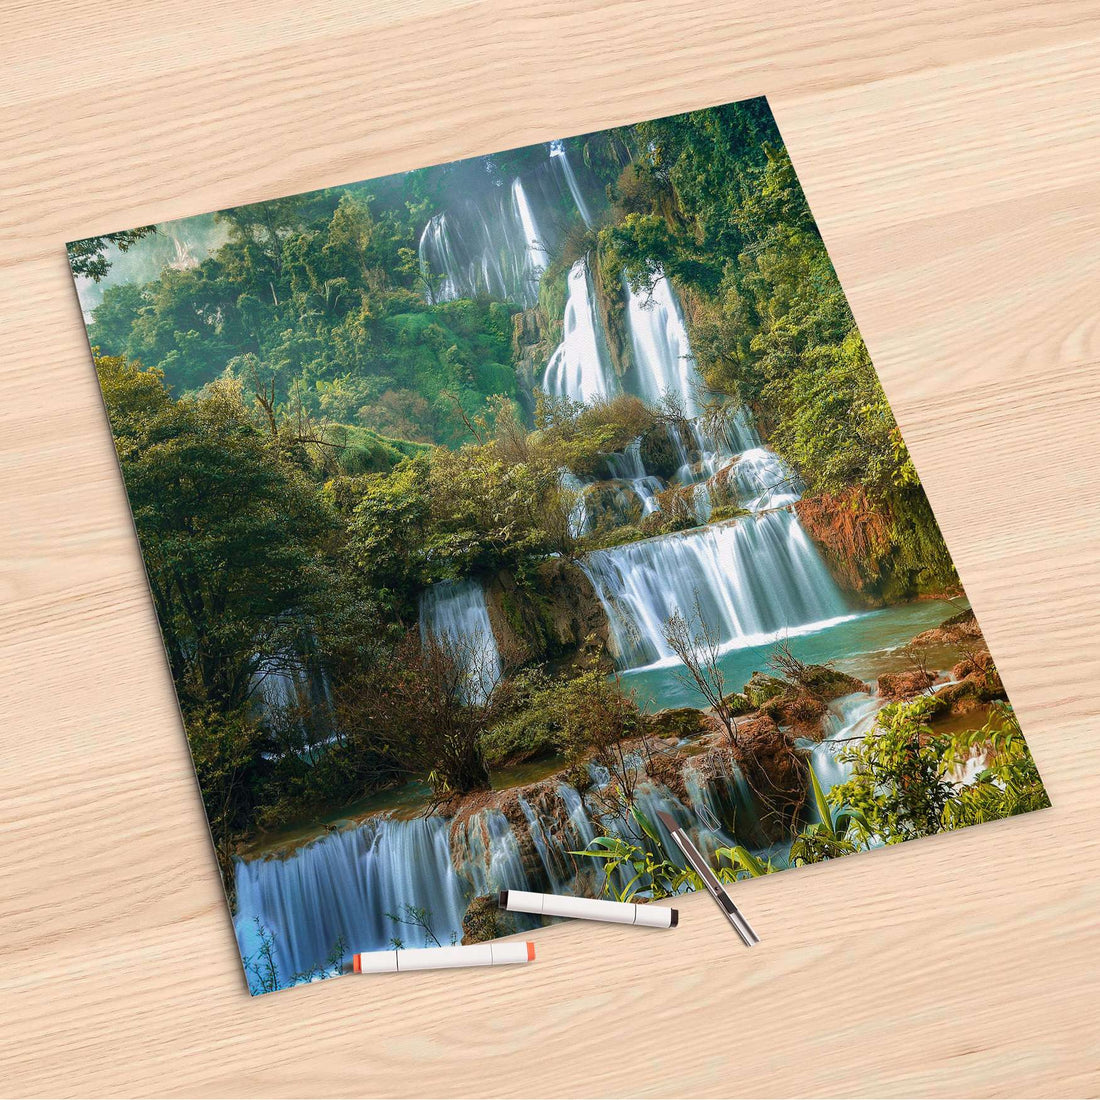 Folienbogen Rainforest - 60x60 cm